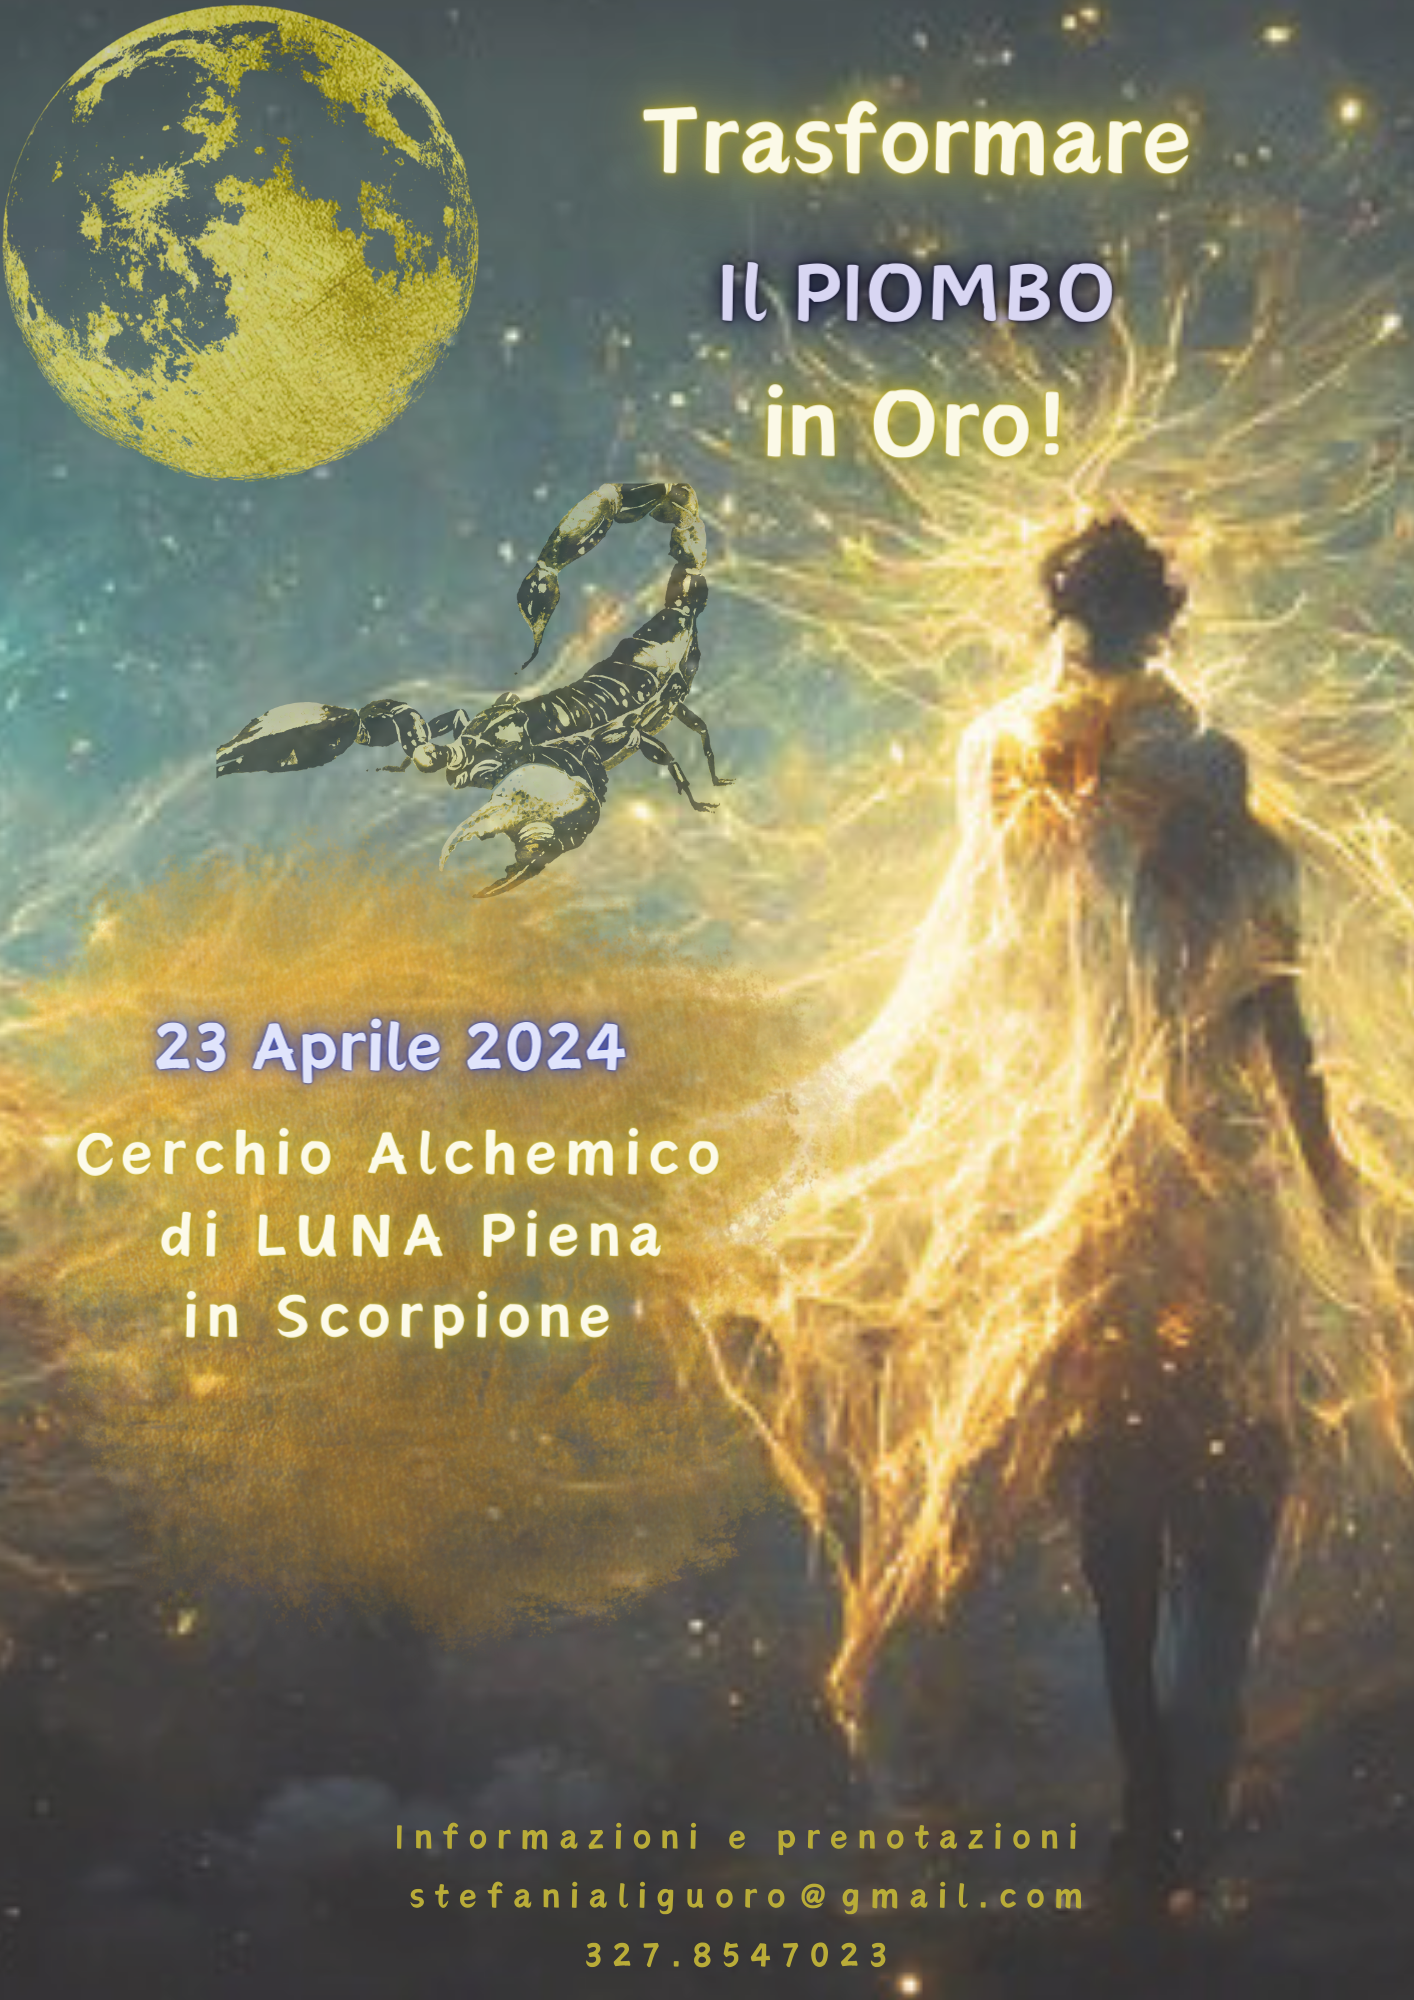 23 Aprile 2024: Trasformare il Piombo in Oro! Cerchio Alchemico di Luna Piena in Scorpione 🗓